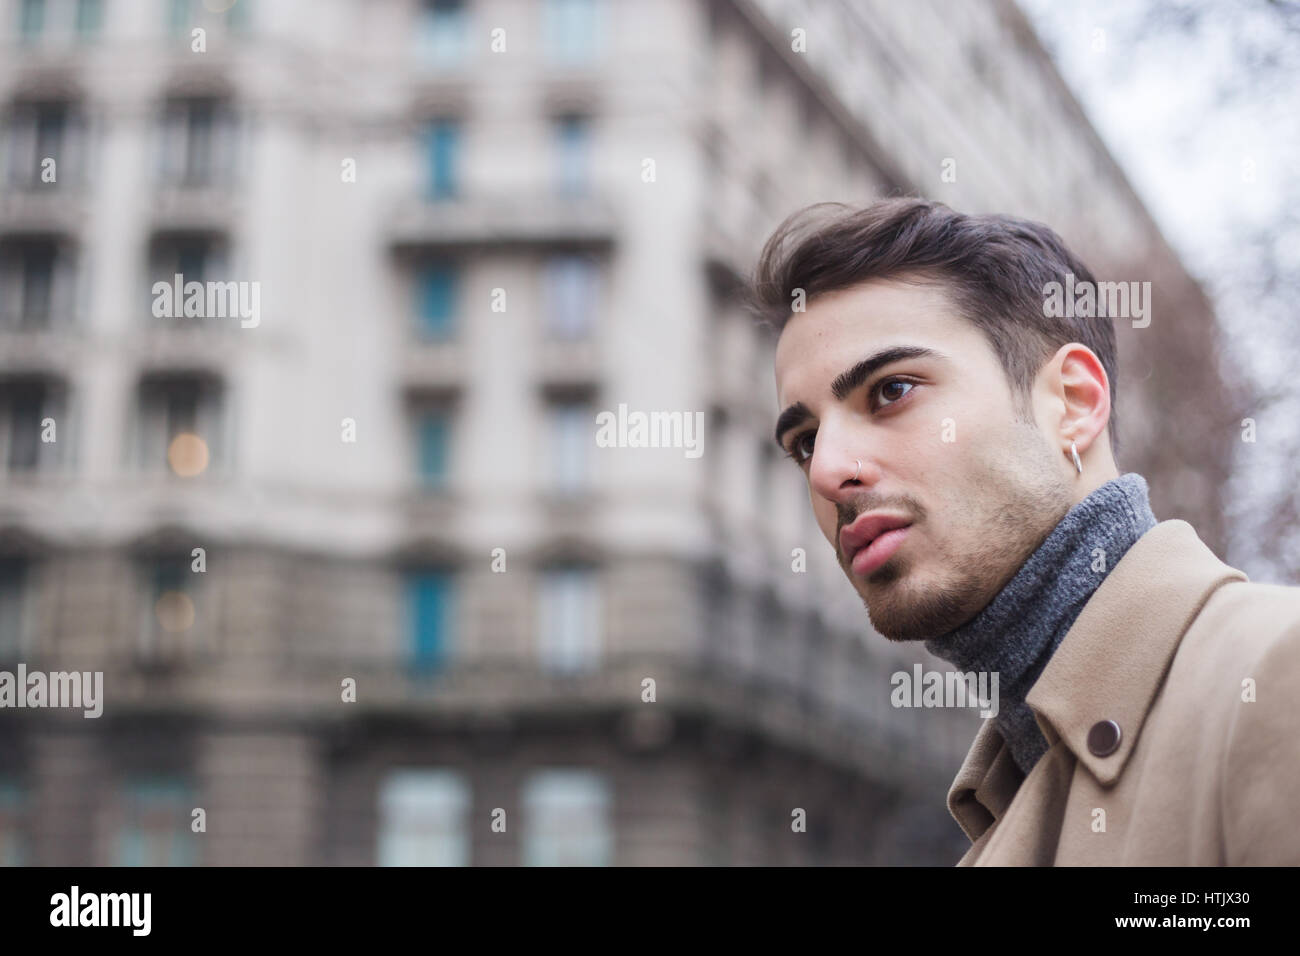 Schöner junger Mann mit kurzen Haaren posiert im urbanen Kontext Stockfoto